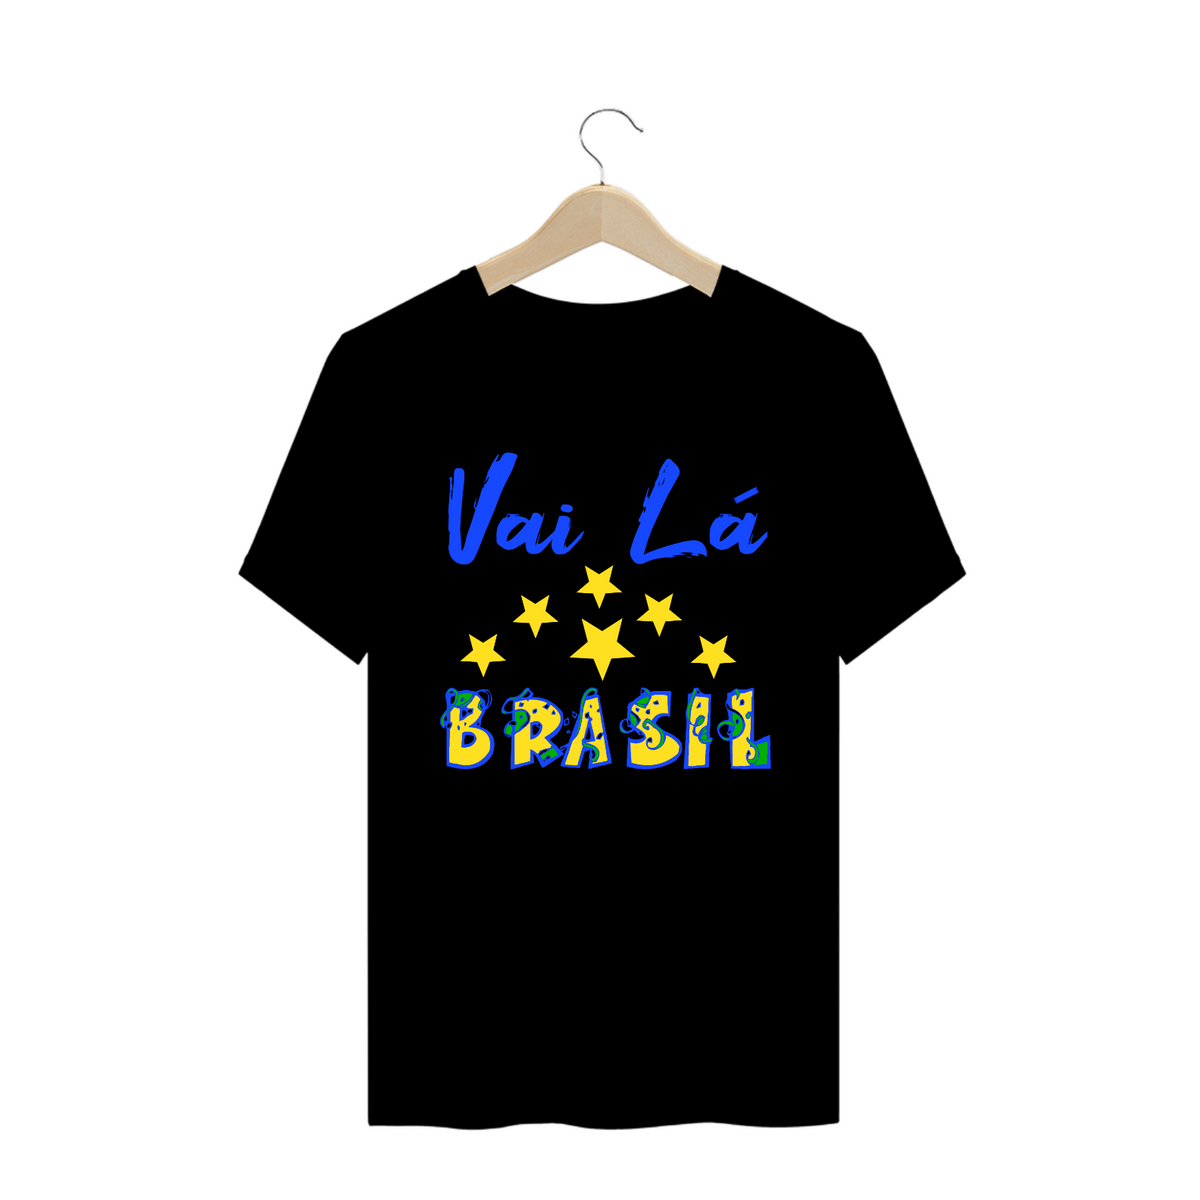 Nome do produto: Camiseta frase Vai lá Brasil